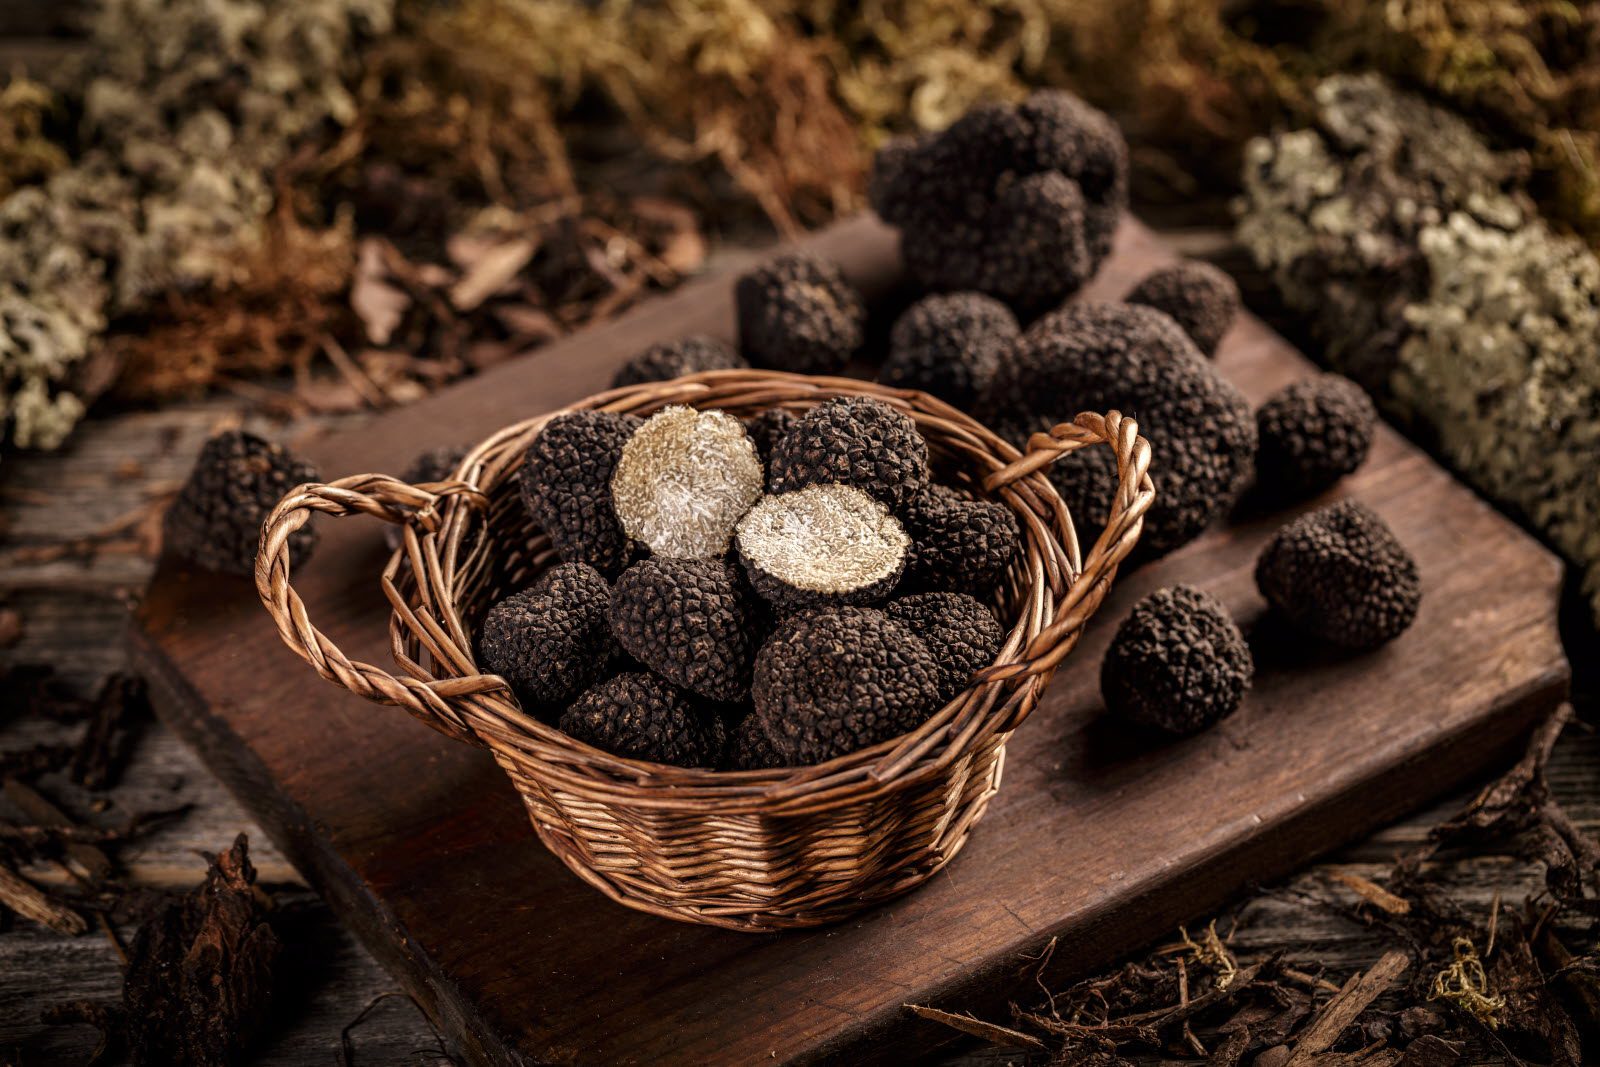 Lire la suite à propos de l’article Truffes blanches, truffes noires, truffes d’été